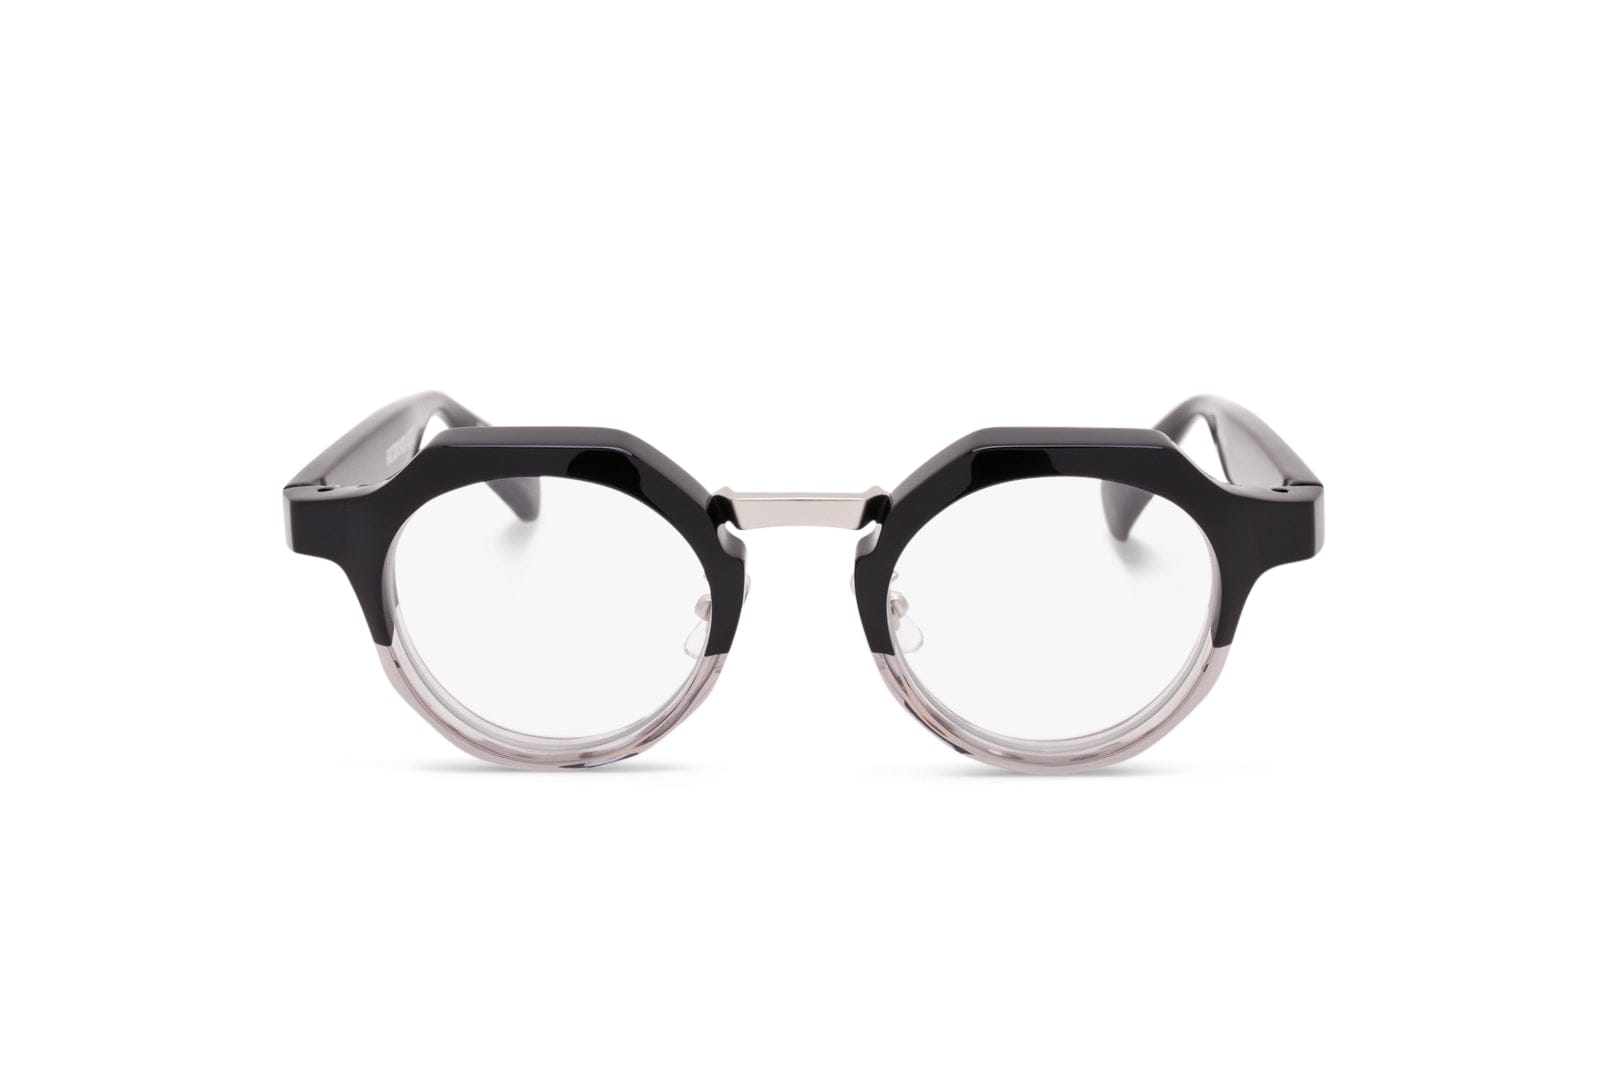 Factory900 Rf 053-084 Eyeglasses In Black / Crystal